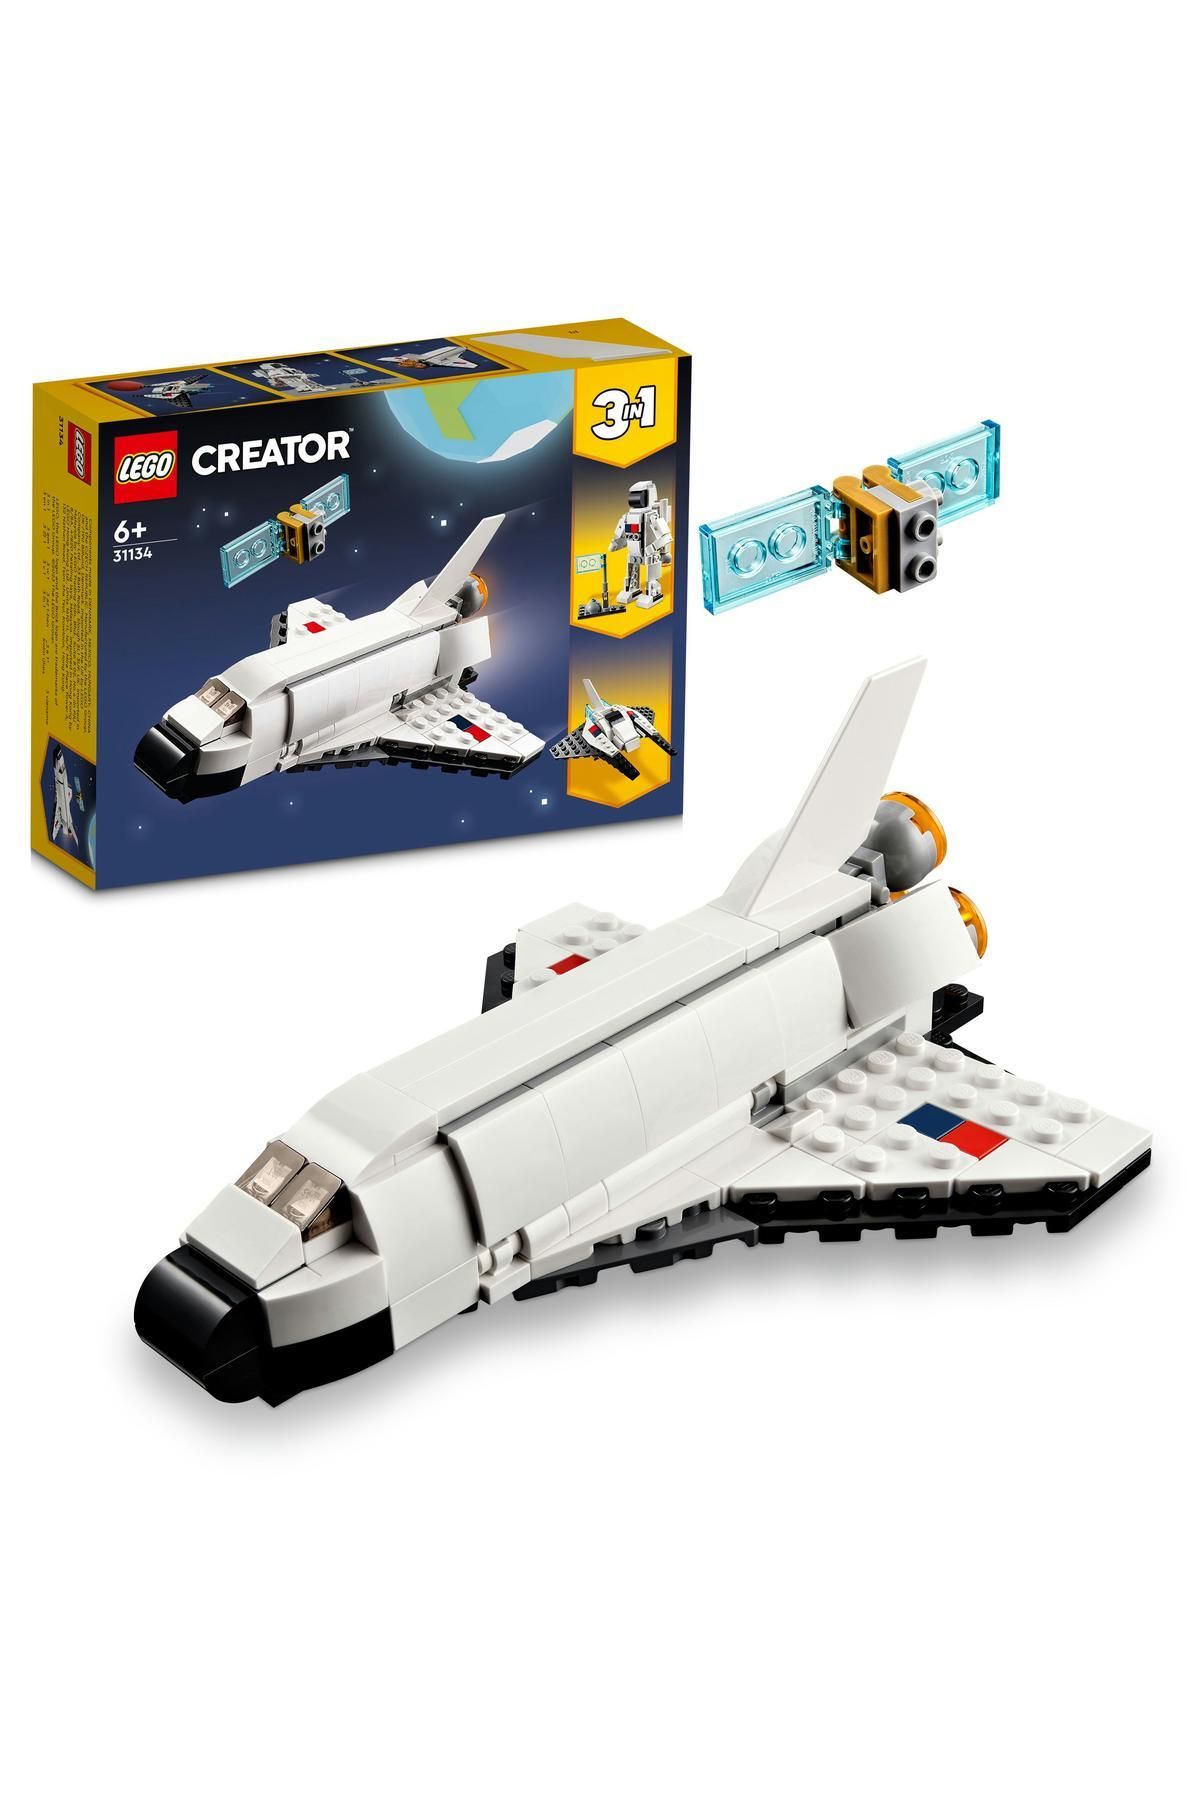 LEGO ® Creator Uzay Mekiği 31134 - 6 Yaş ve Üzeri Çocuklar için Yaratıcı Yapım Seti (144 Parça)